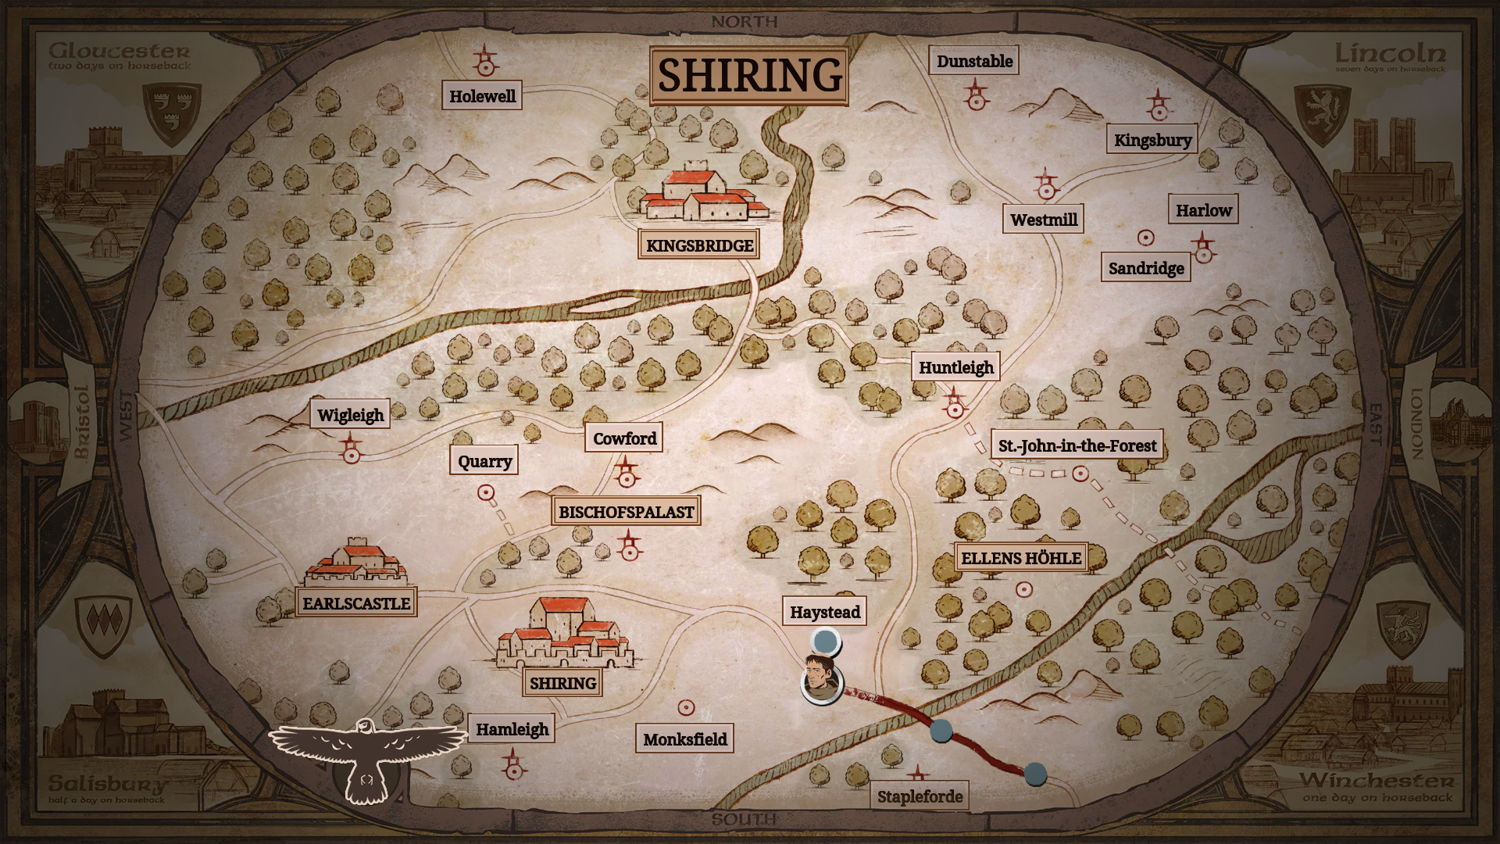 Reisekarte und Übersicht über Shiring